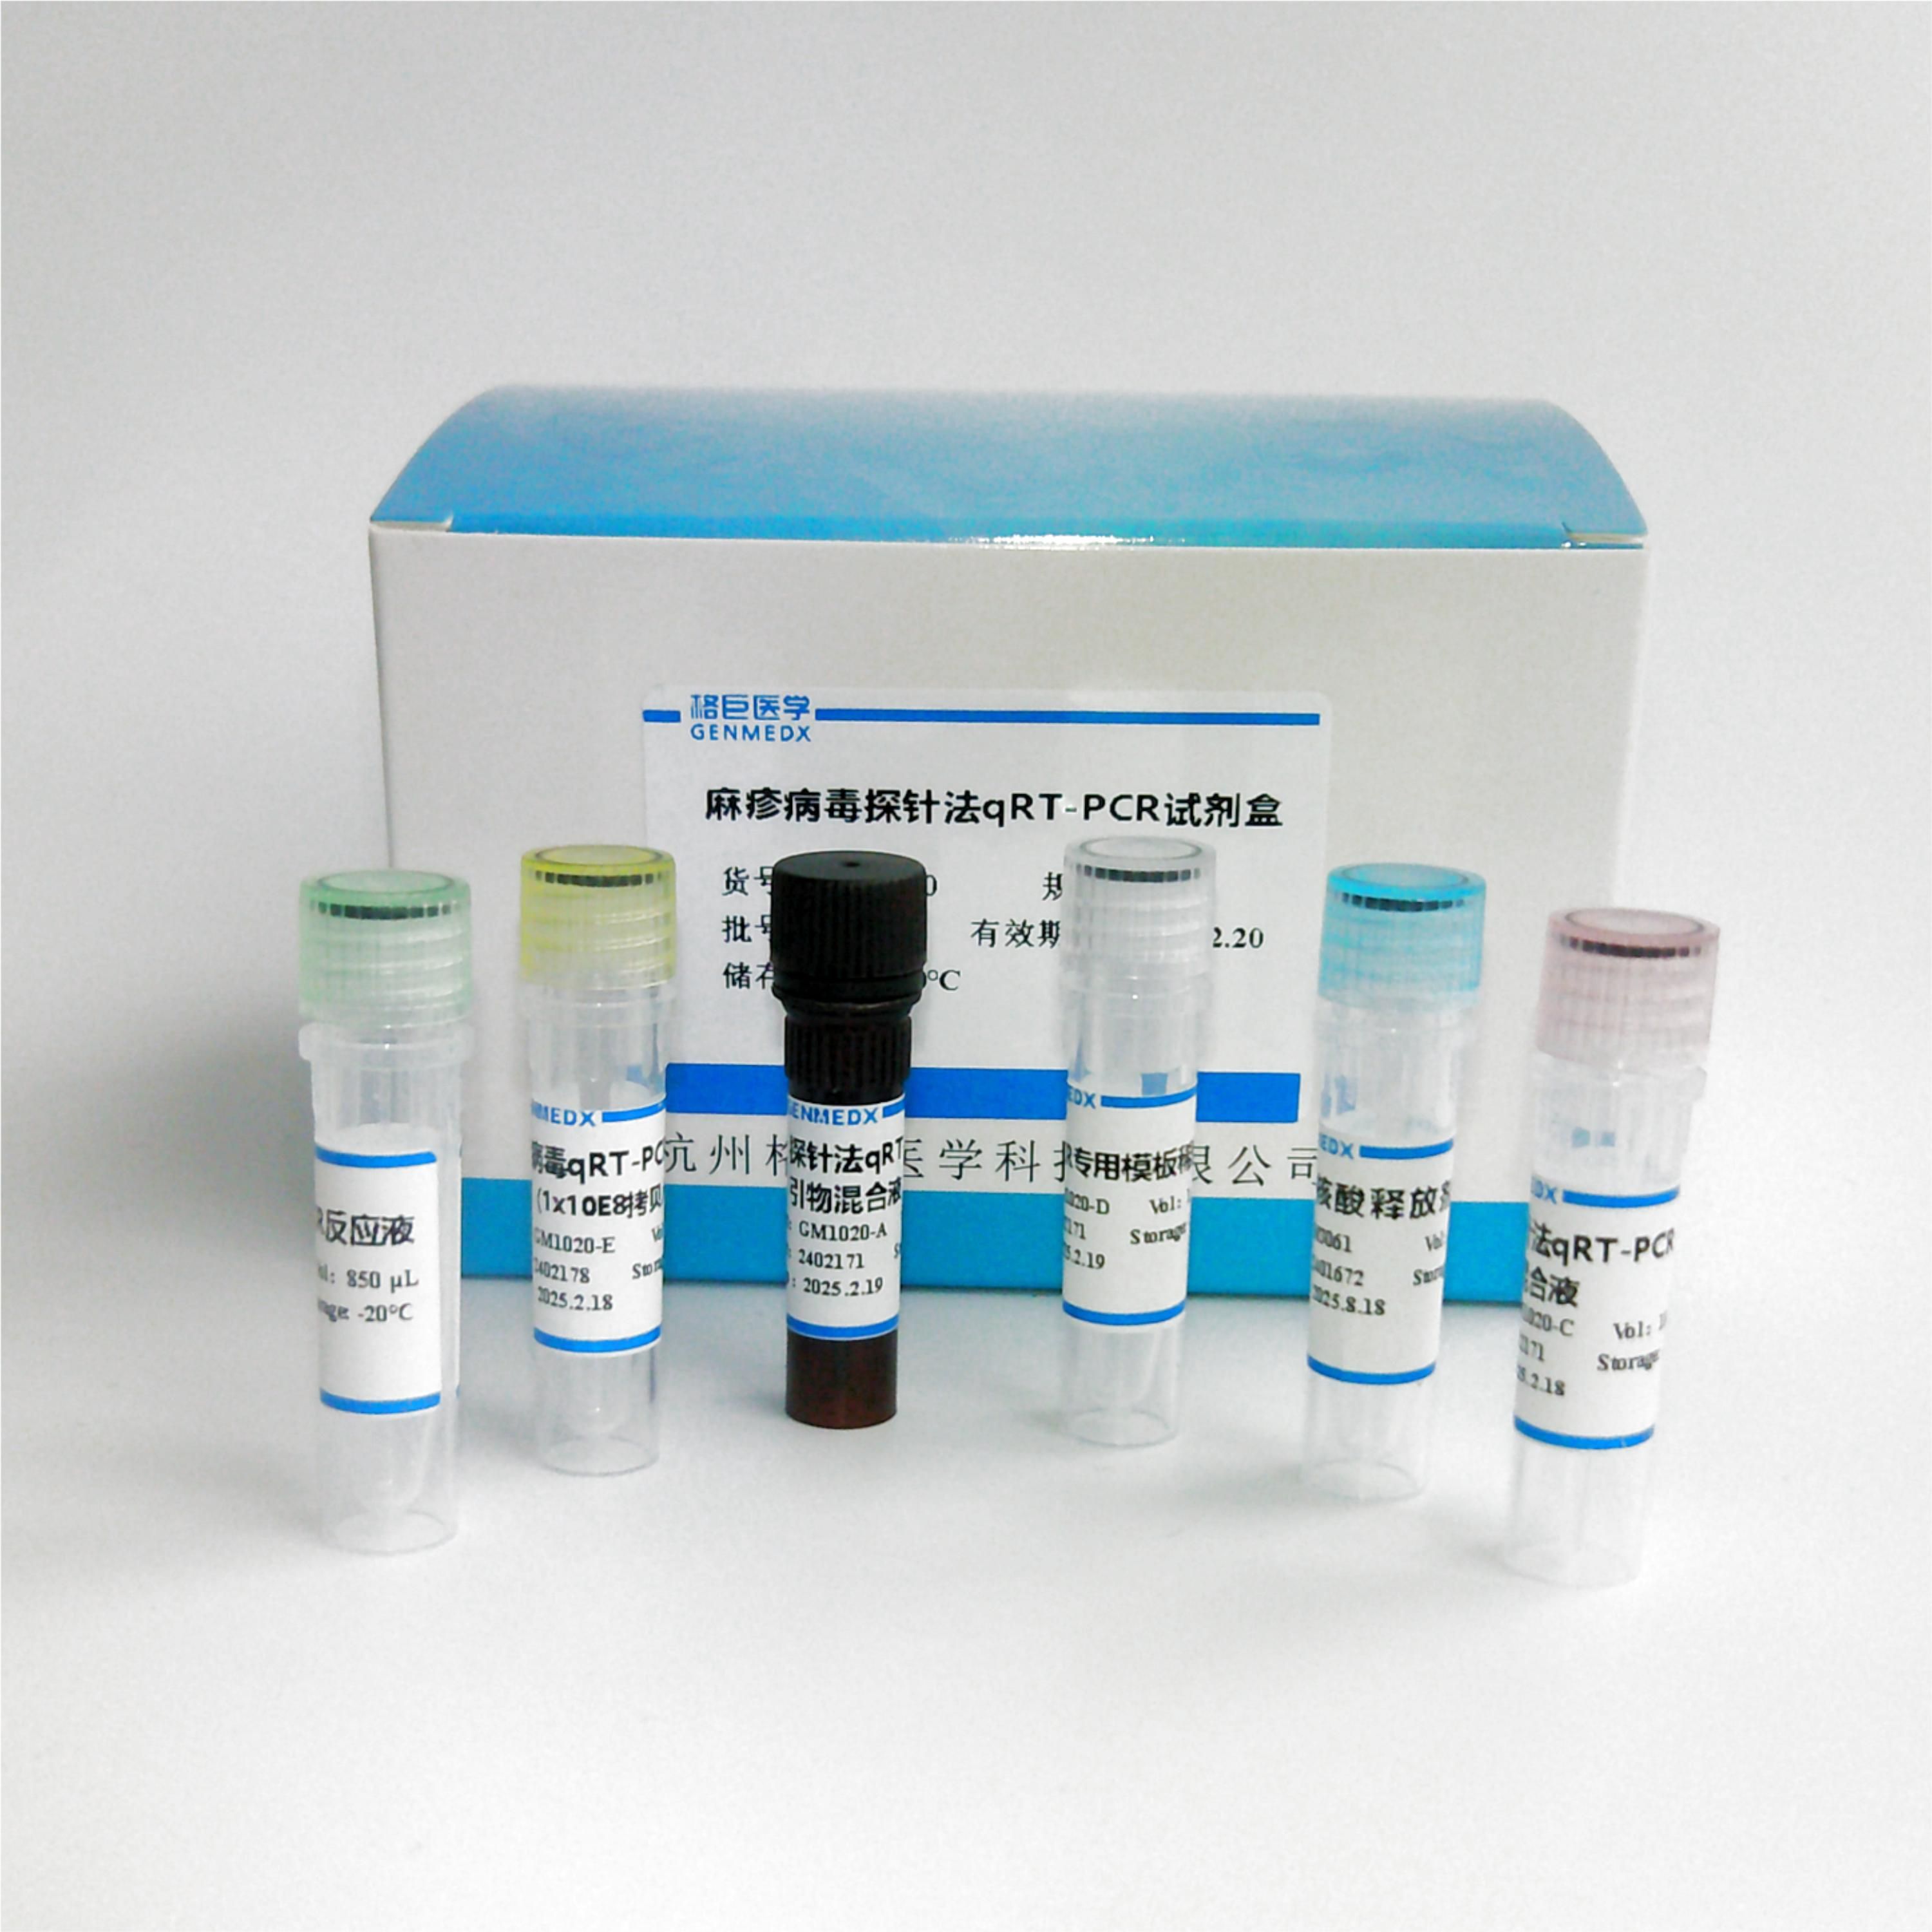 柯萨奇病毒A16型探针法荧光定量RT-PCR试剂盒